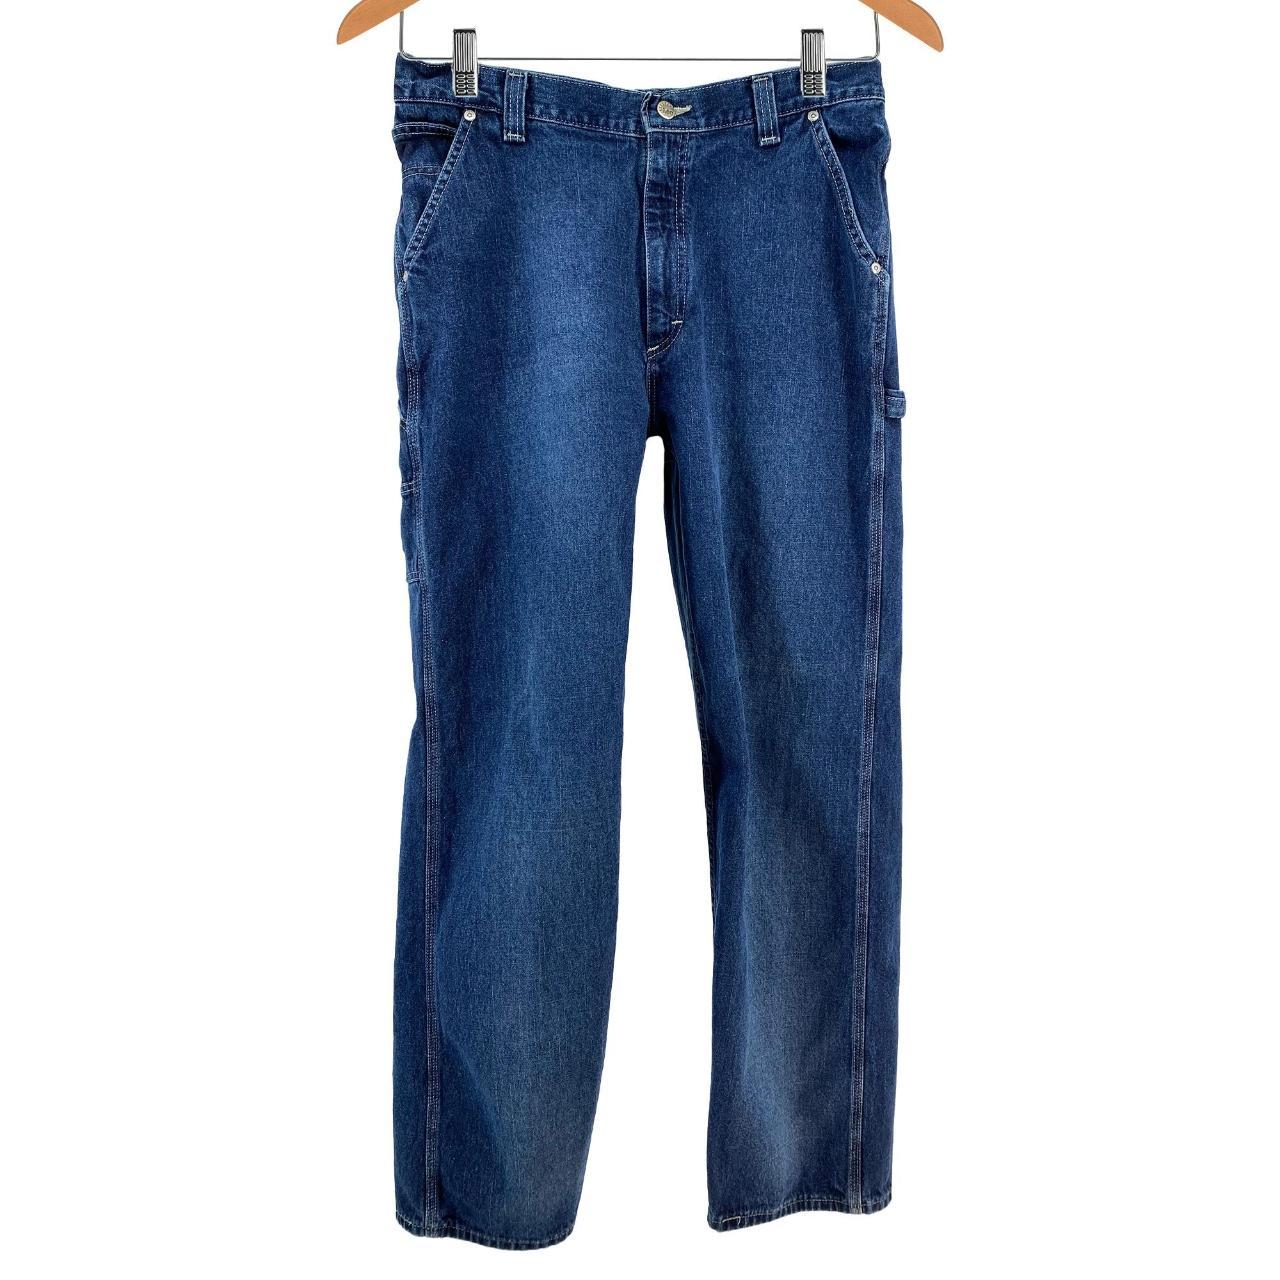 Vintage '90s Lee Riveted Carpenter Jeans - Women's... - Depop